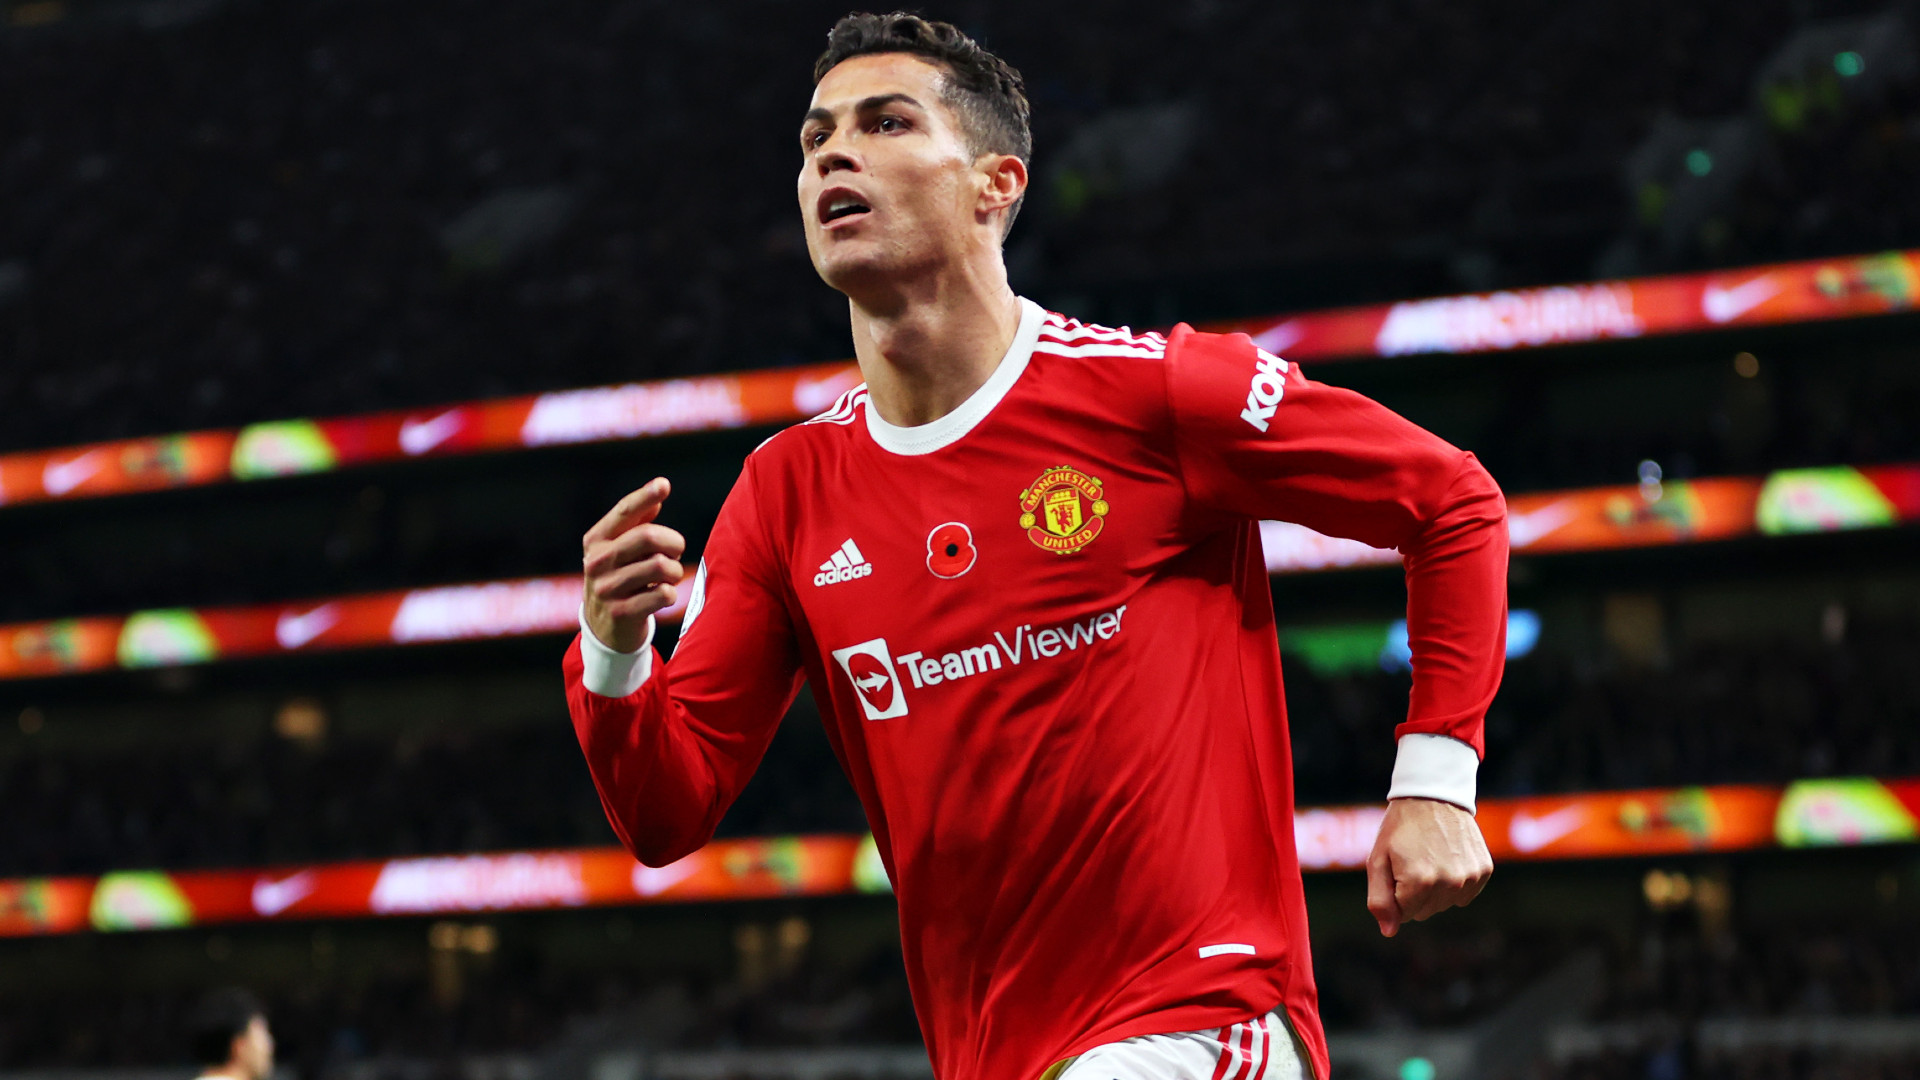 Manu’da Krizin Adı: “Cristiano Ronaldo!”